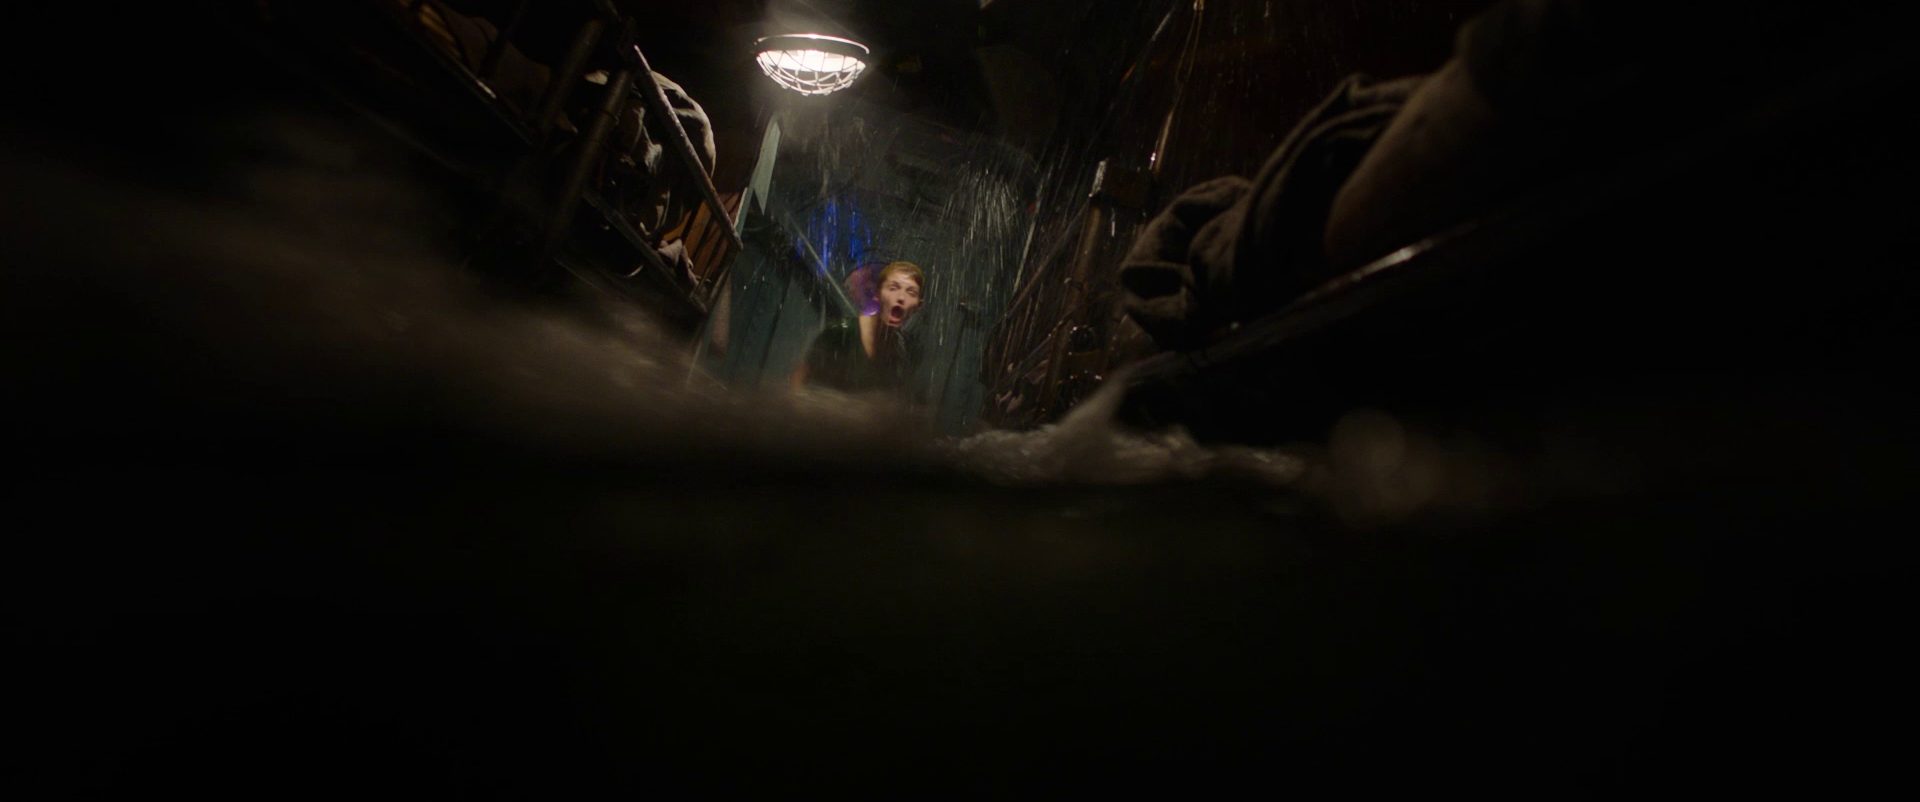 Halb-unter-Wasser-Blick durch ein volllaufendes U-Boot-Abteil, an dessen Ende eine schreiende Frau in Angst halb aus dem Wasser ragt.